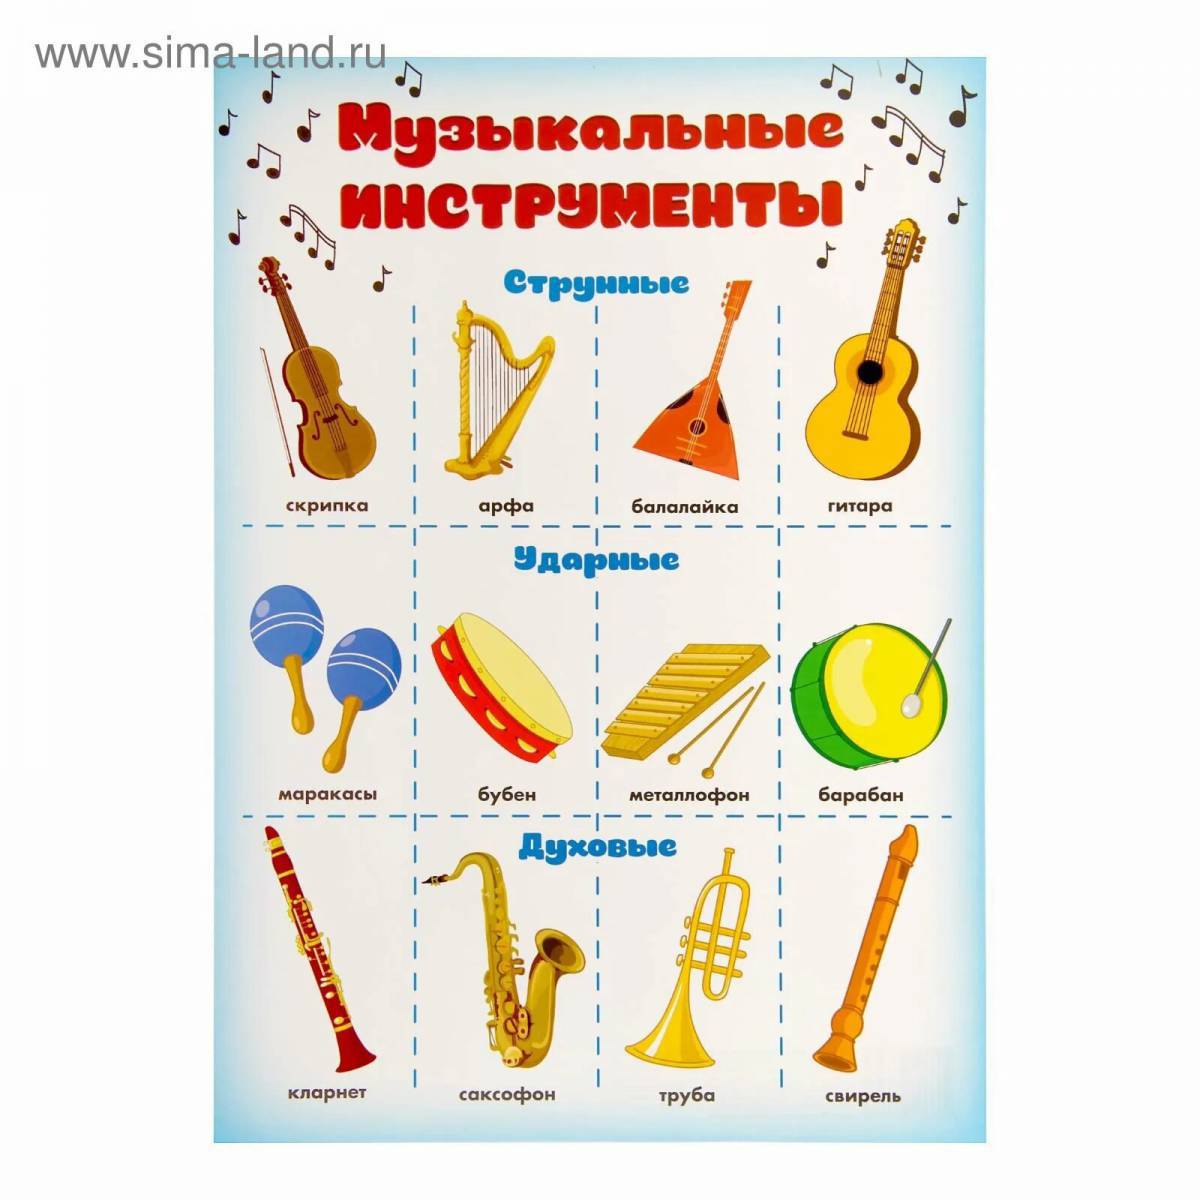 Музыкальные инструменты для детей с названиями #24